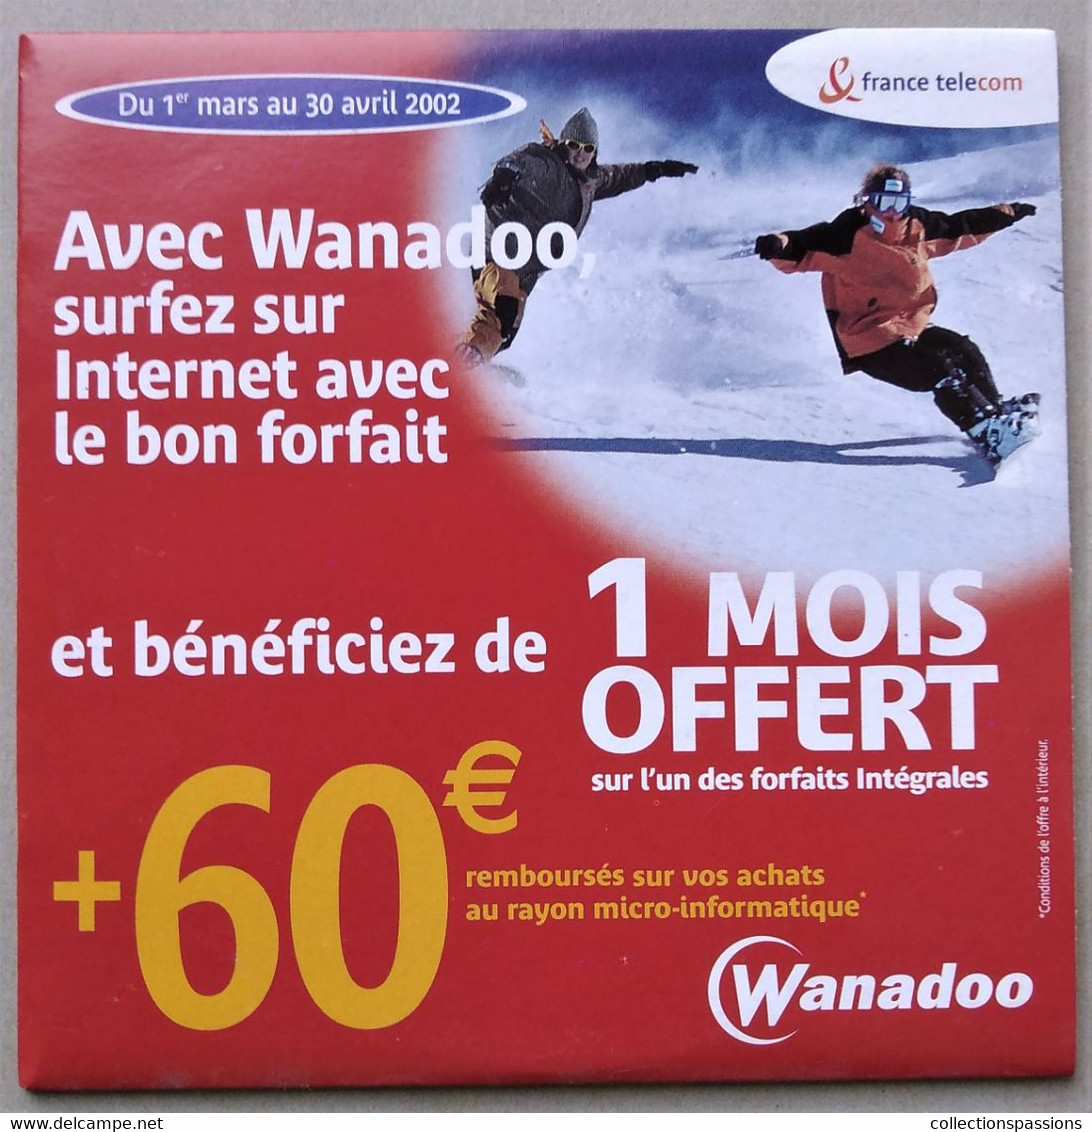 - Pochette CD ROM De Connexion Internet - WANADOO - - Kit De Conección A Internet